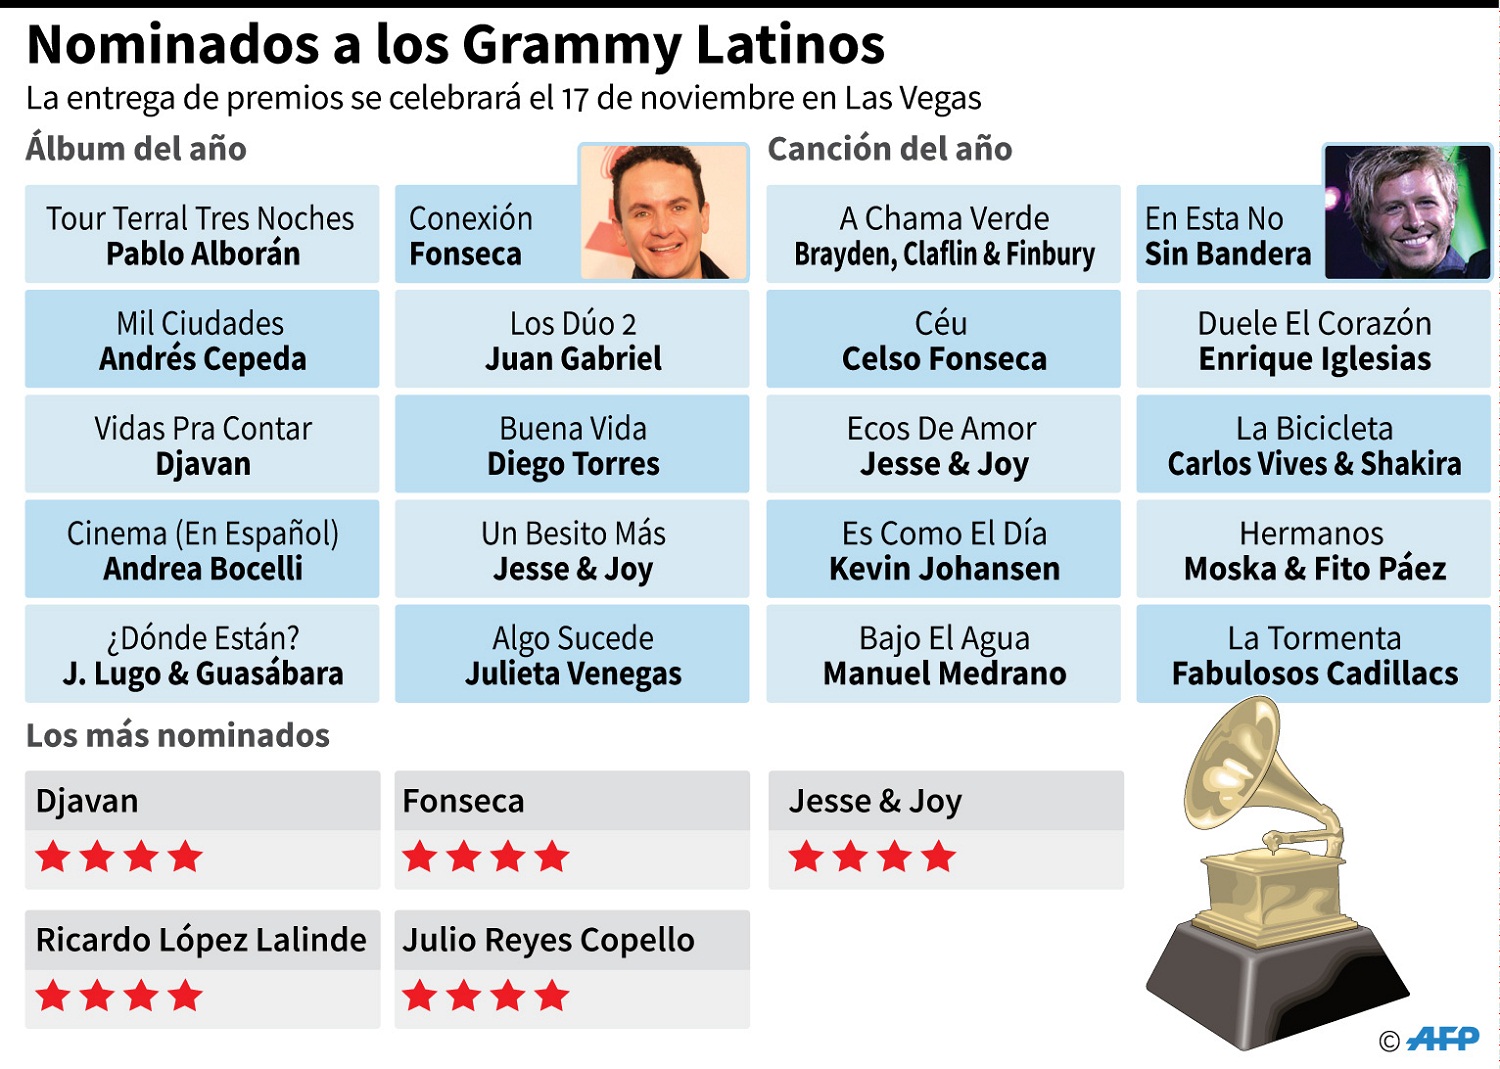 Los nominados al Grammy Latino